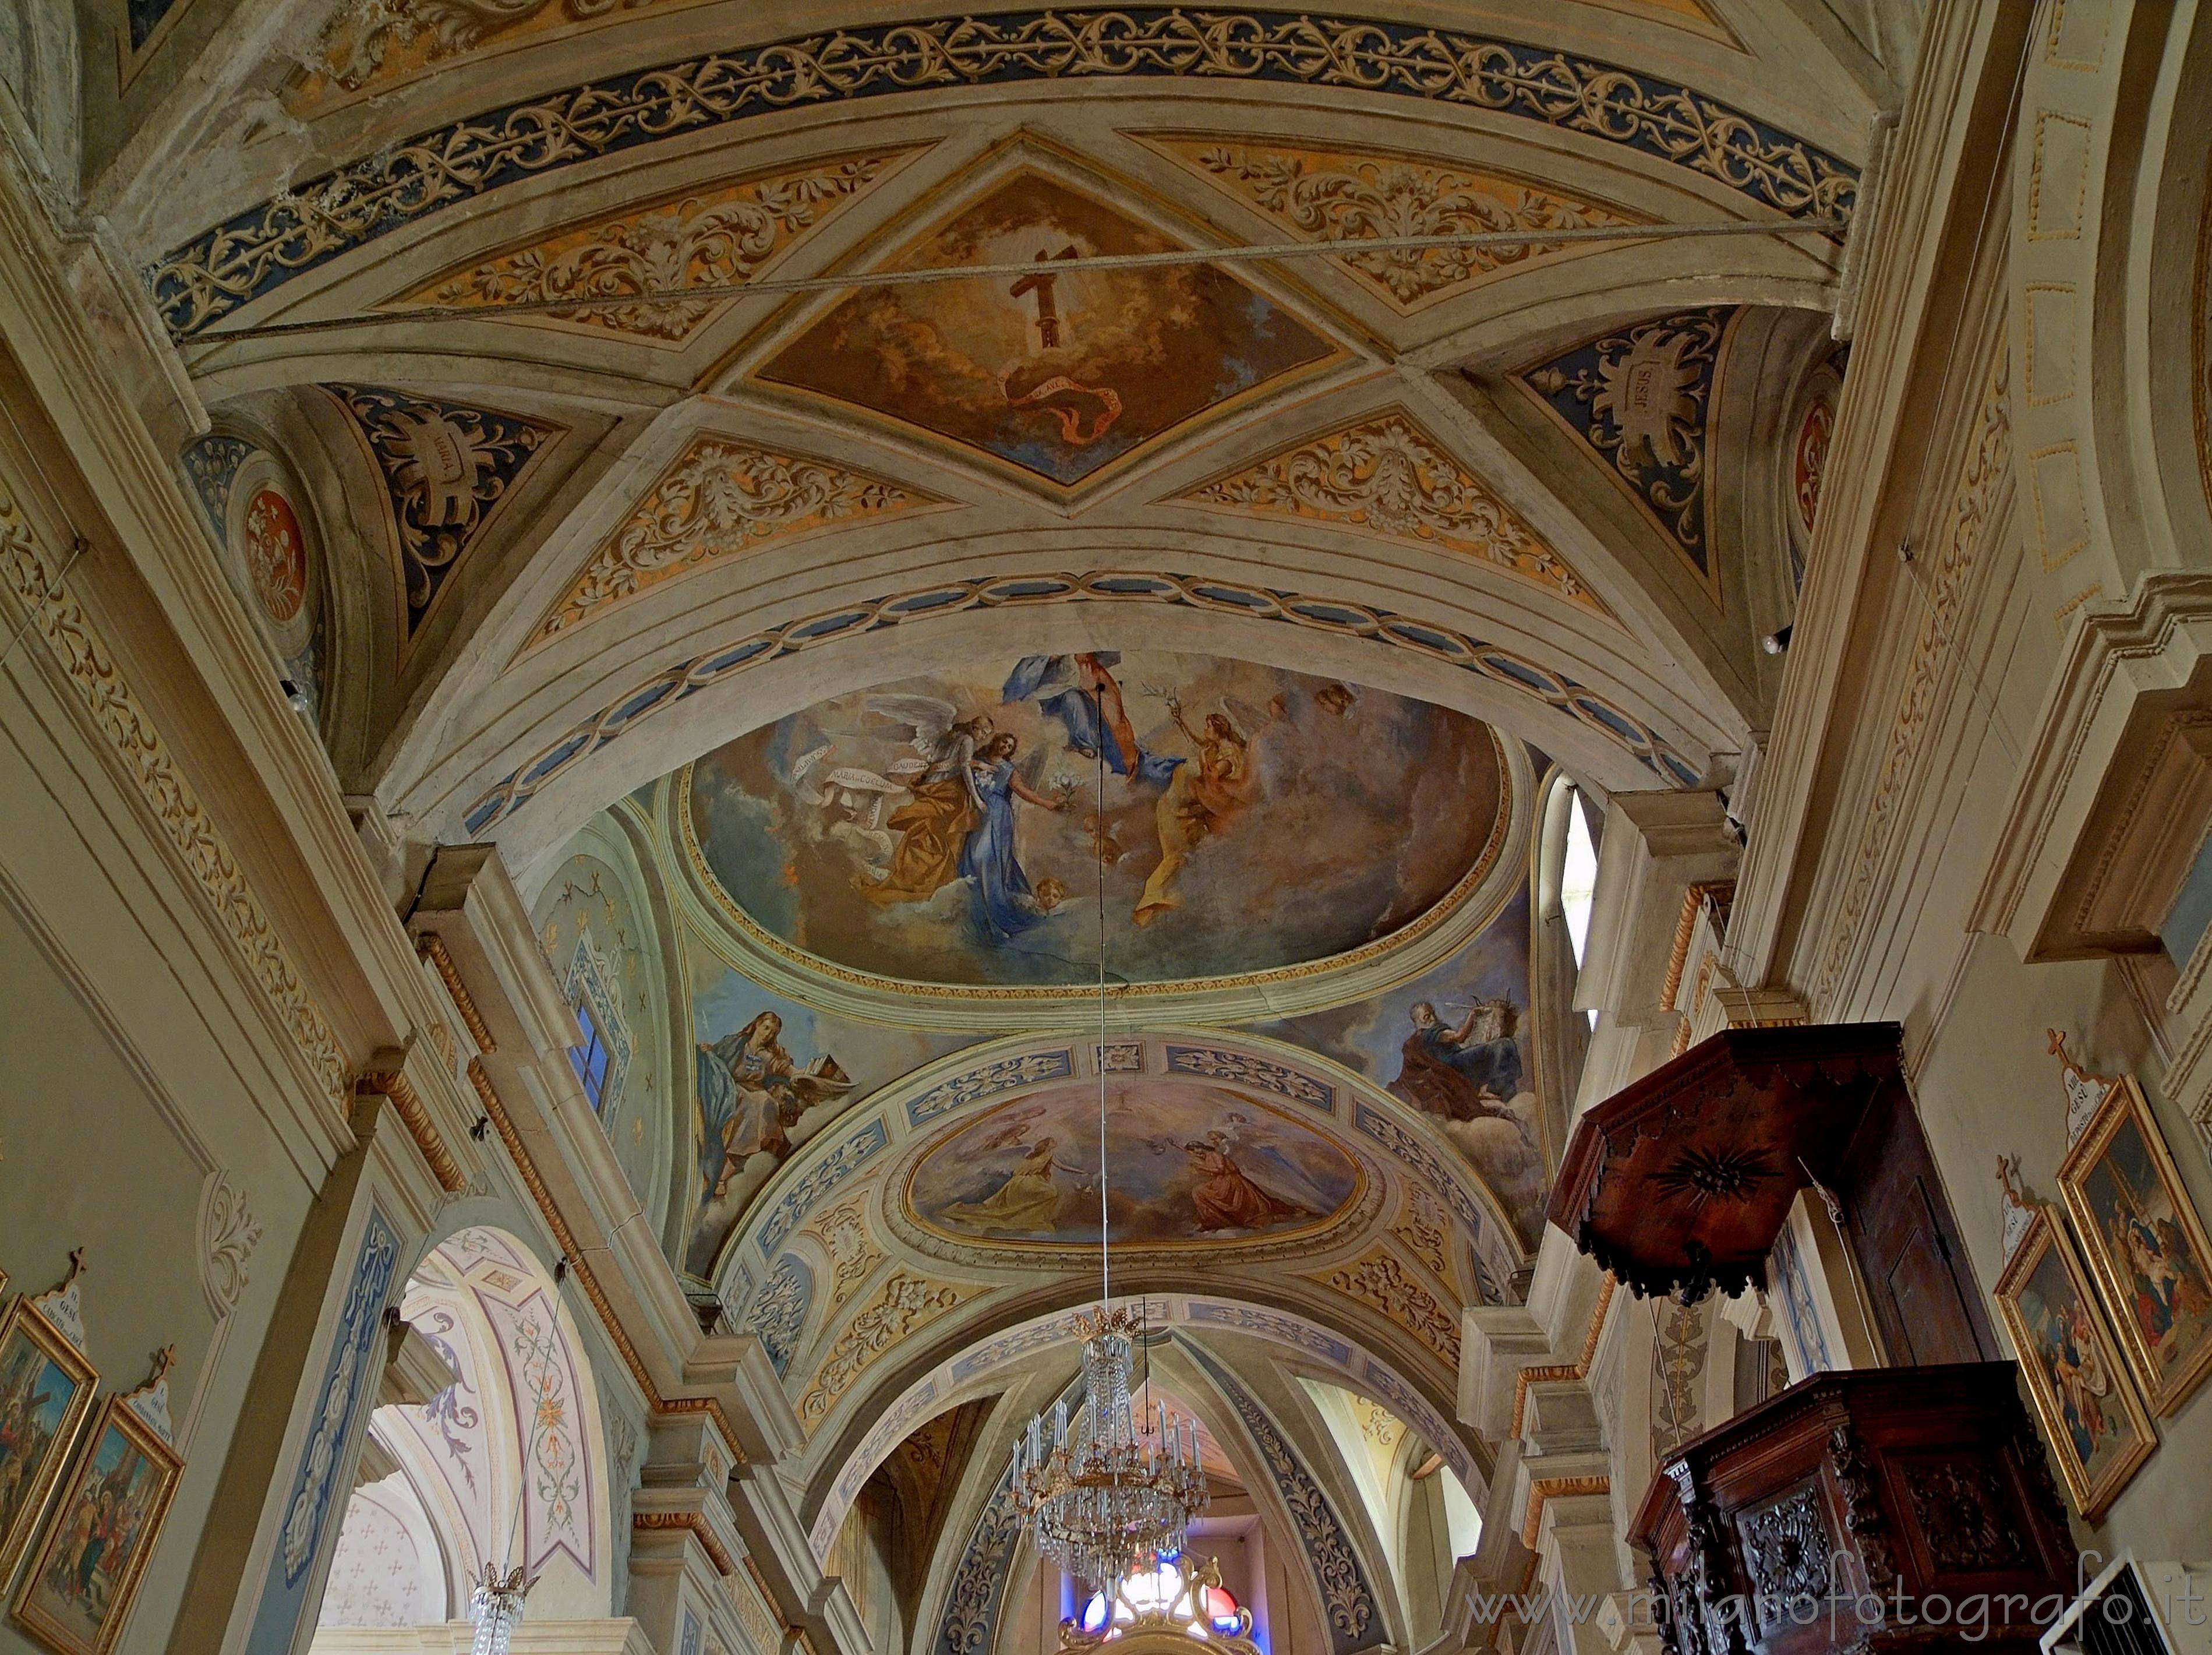 Piedicavallo (Biella, Italy): Frescos on the ceiling of the arochial church - Piedicavallo (Biella, Italy)